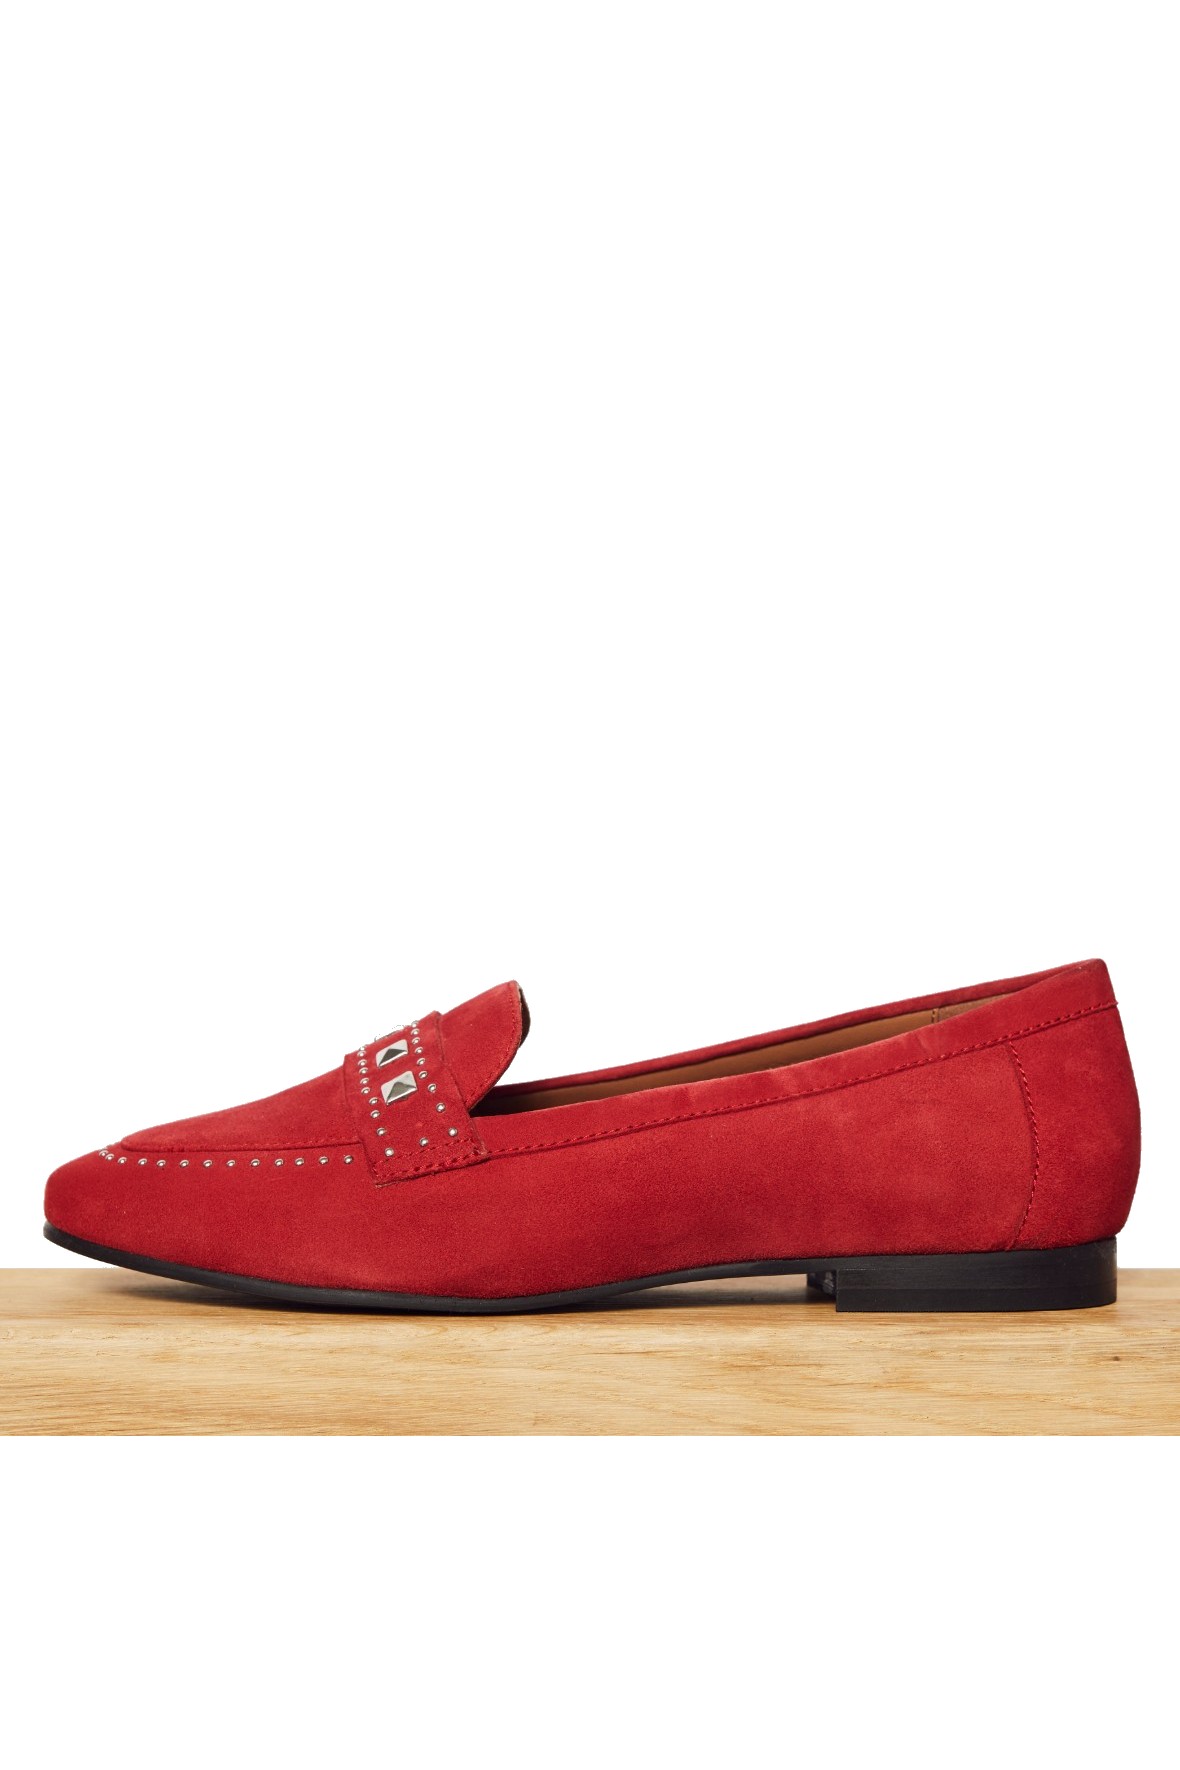 Tranquility Glorious Sporvogn Micha moccasin sko i rødt nubuck skind til damer - Hos Lohse